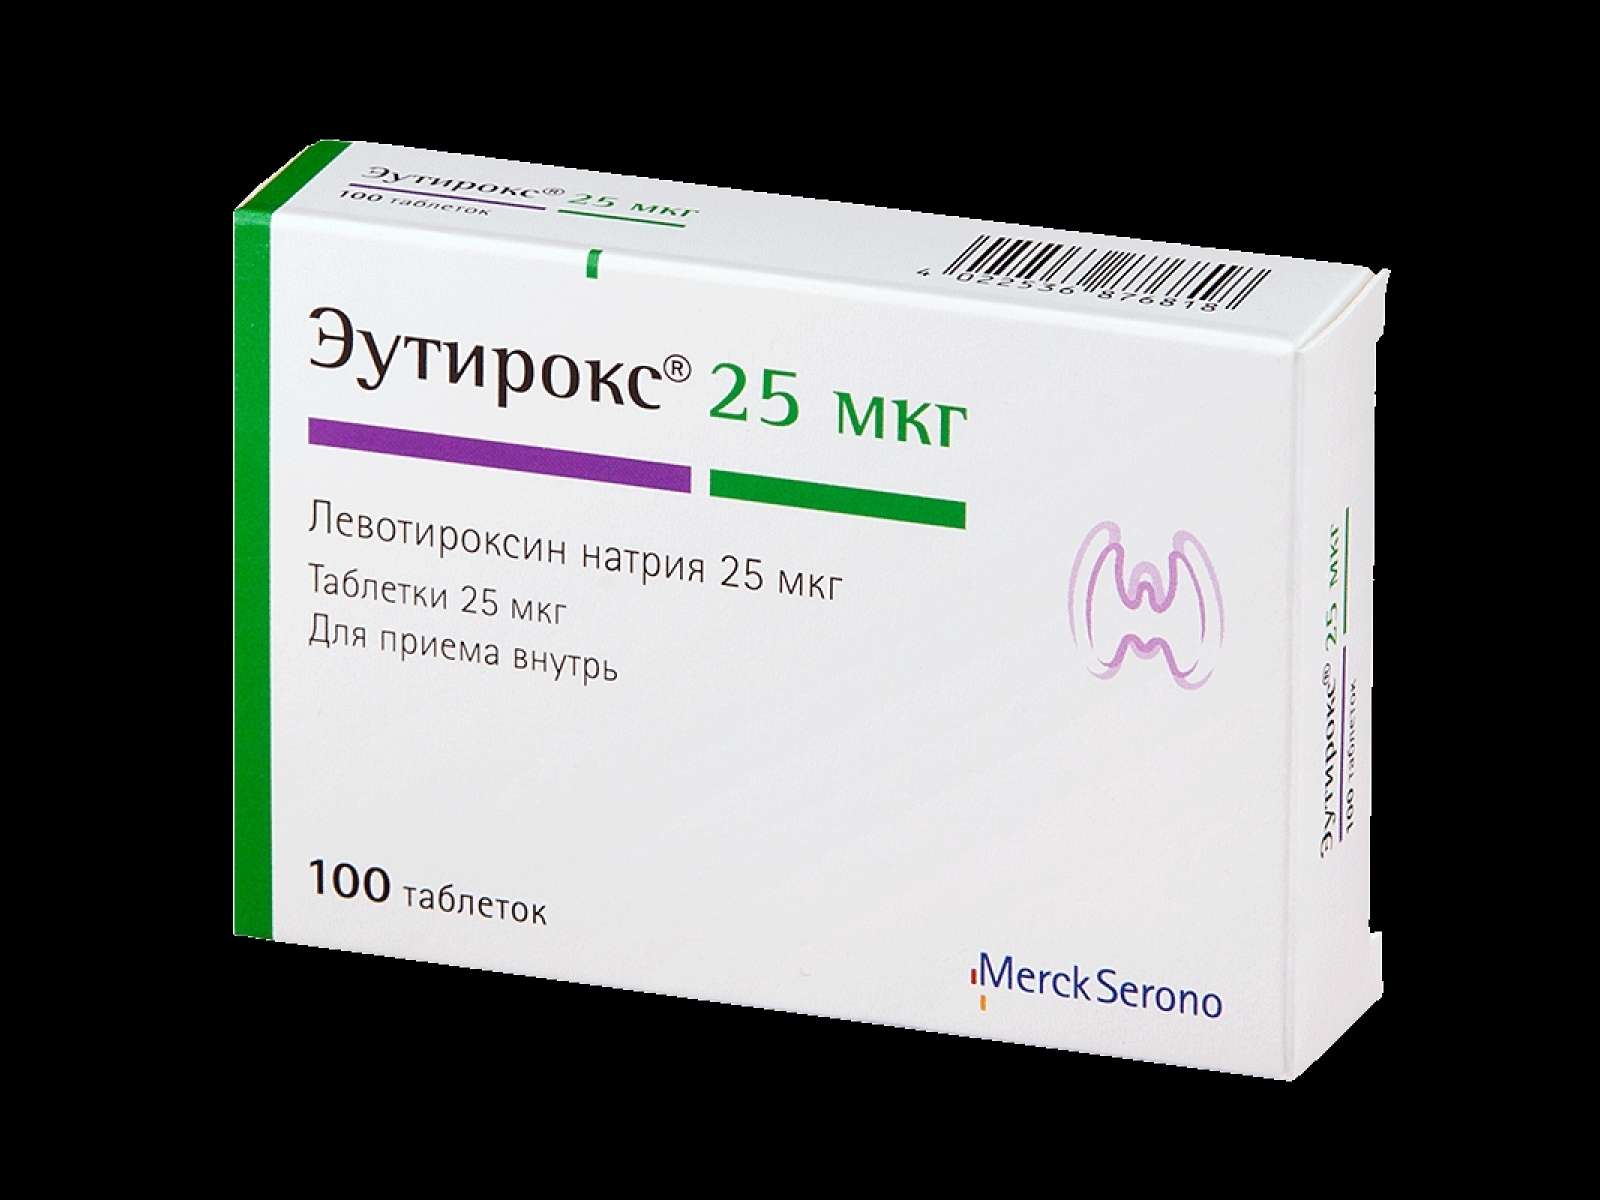 Купить Эутирокс 150 В Москве В Аптеках